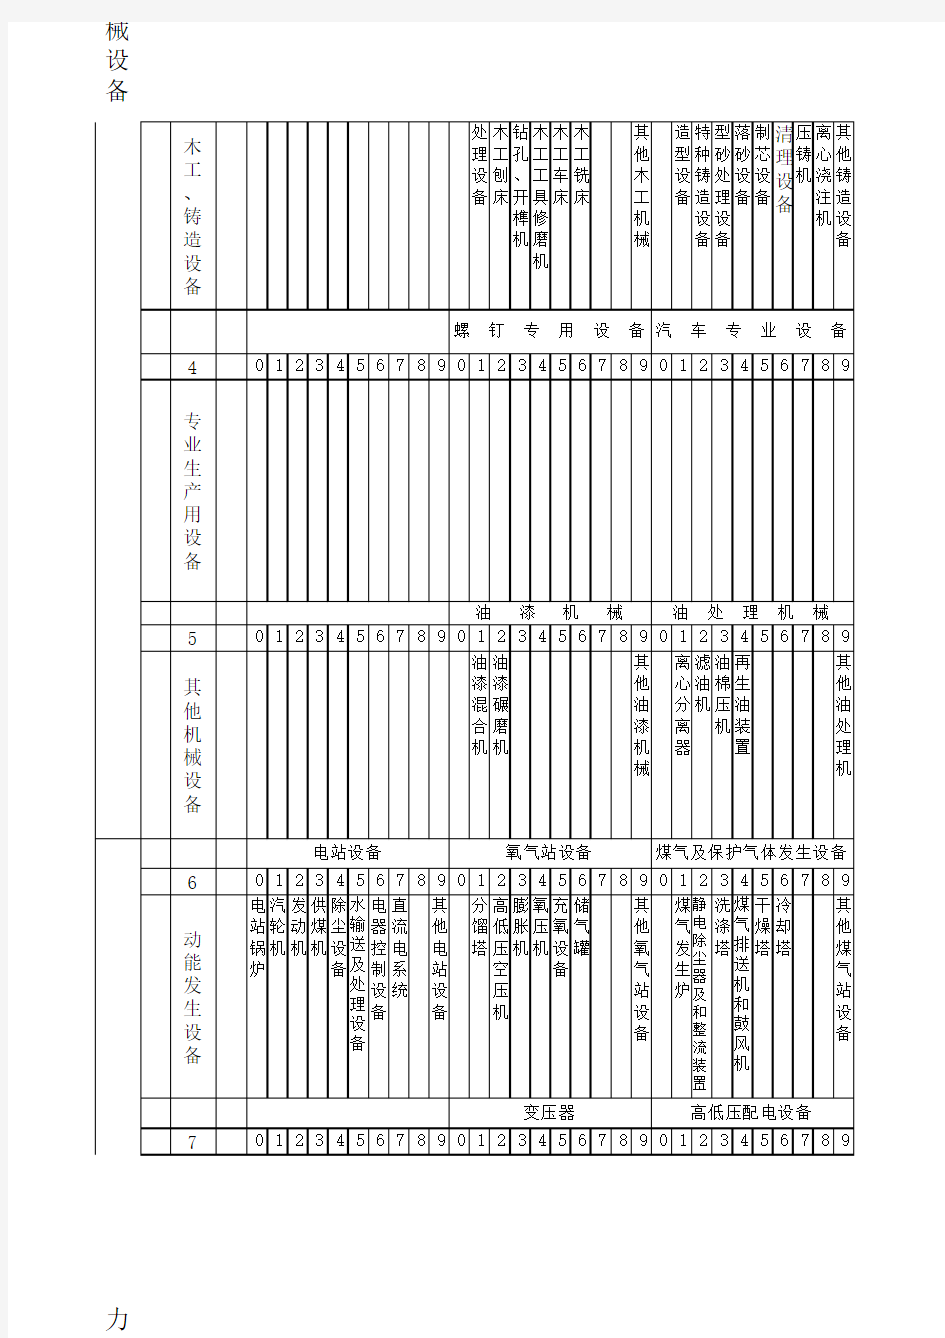 设备统一分类及编号目录(在1965年《目录》的基础上修改补充)   1988年6月